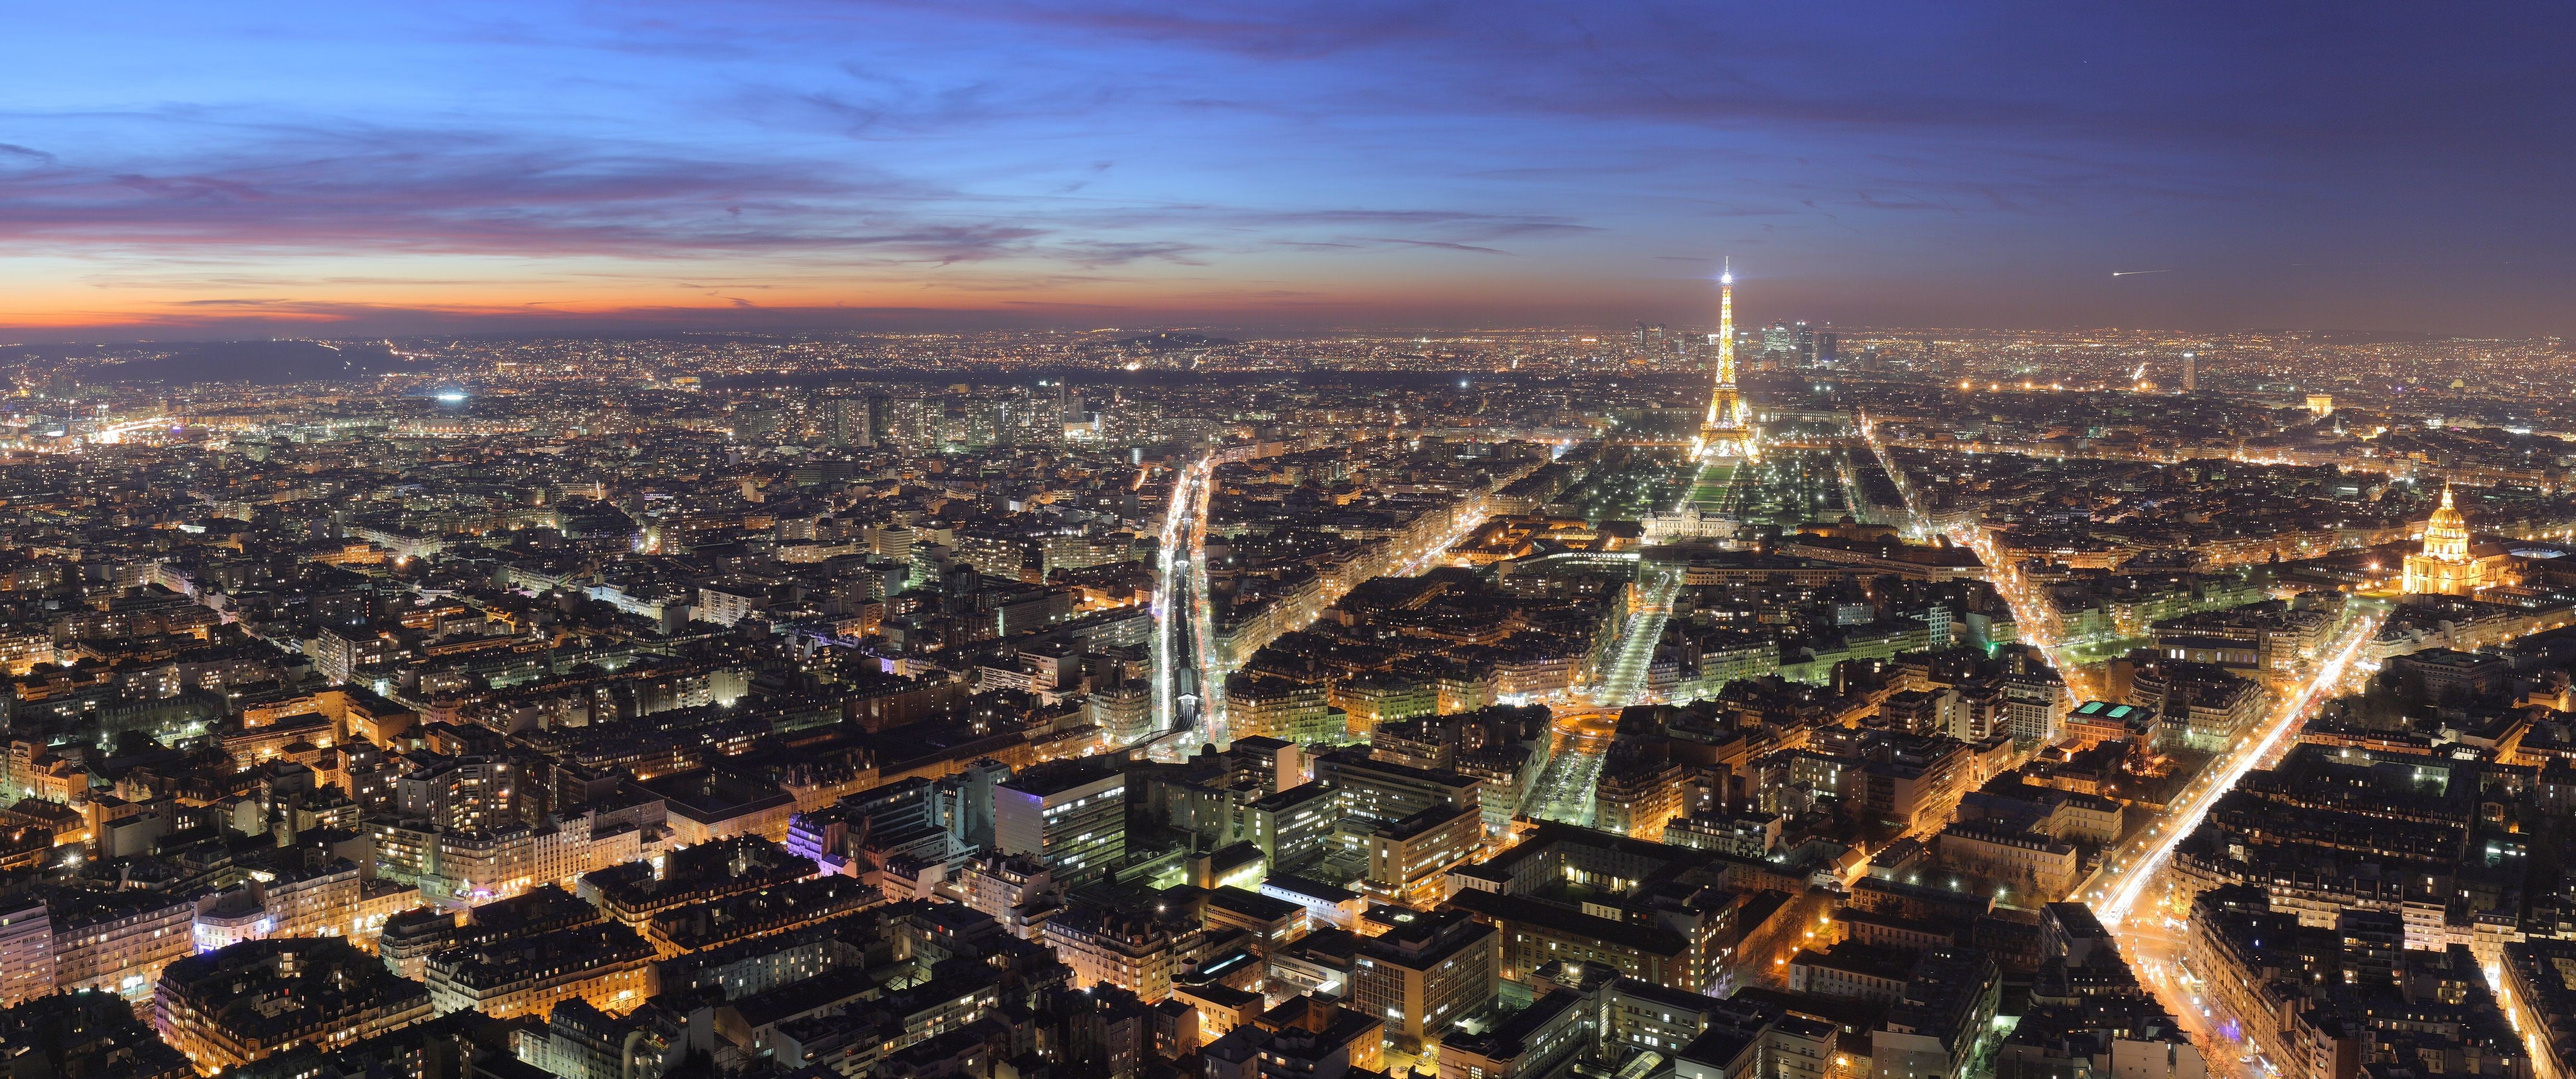 Paris Eiffel tower, ultrawide, dusk, Paris, cityscape